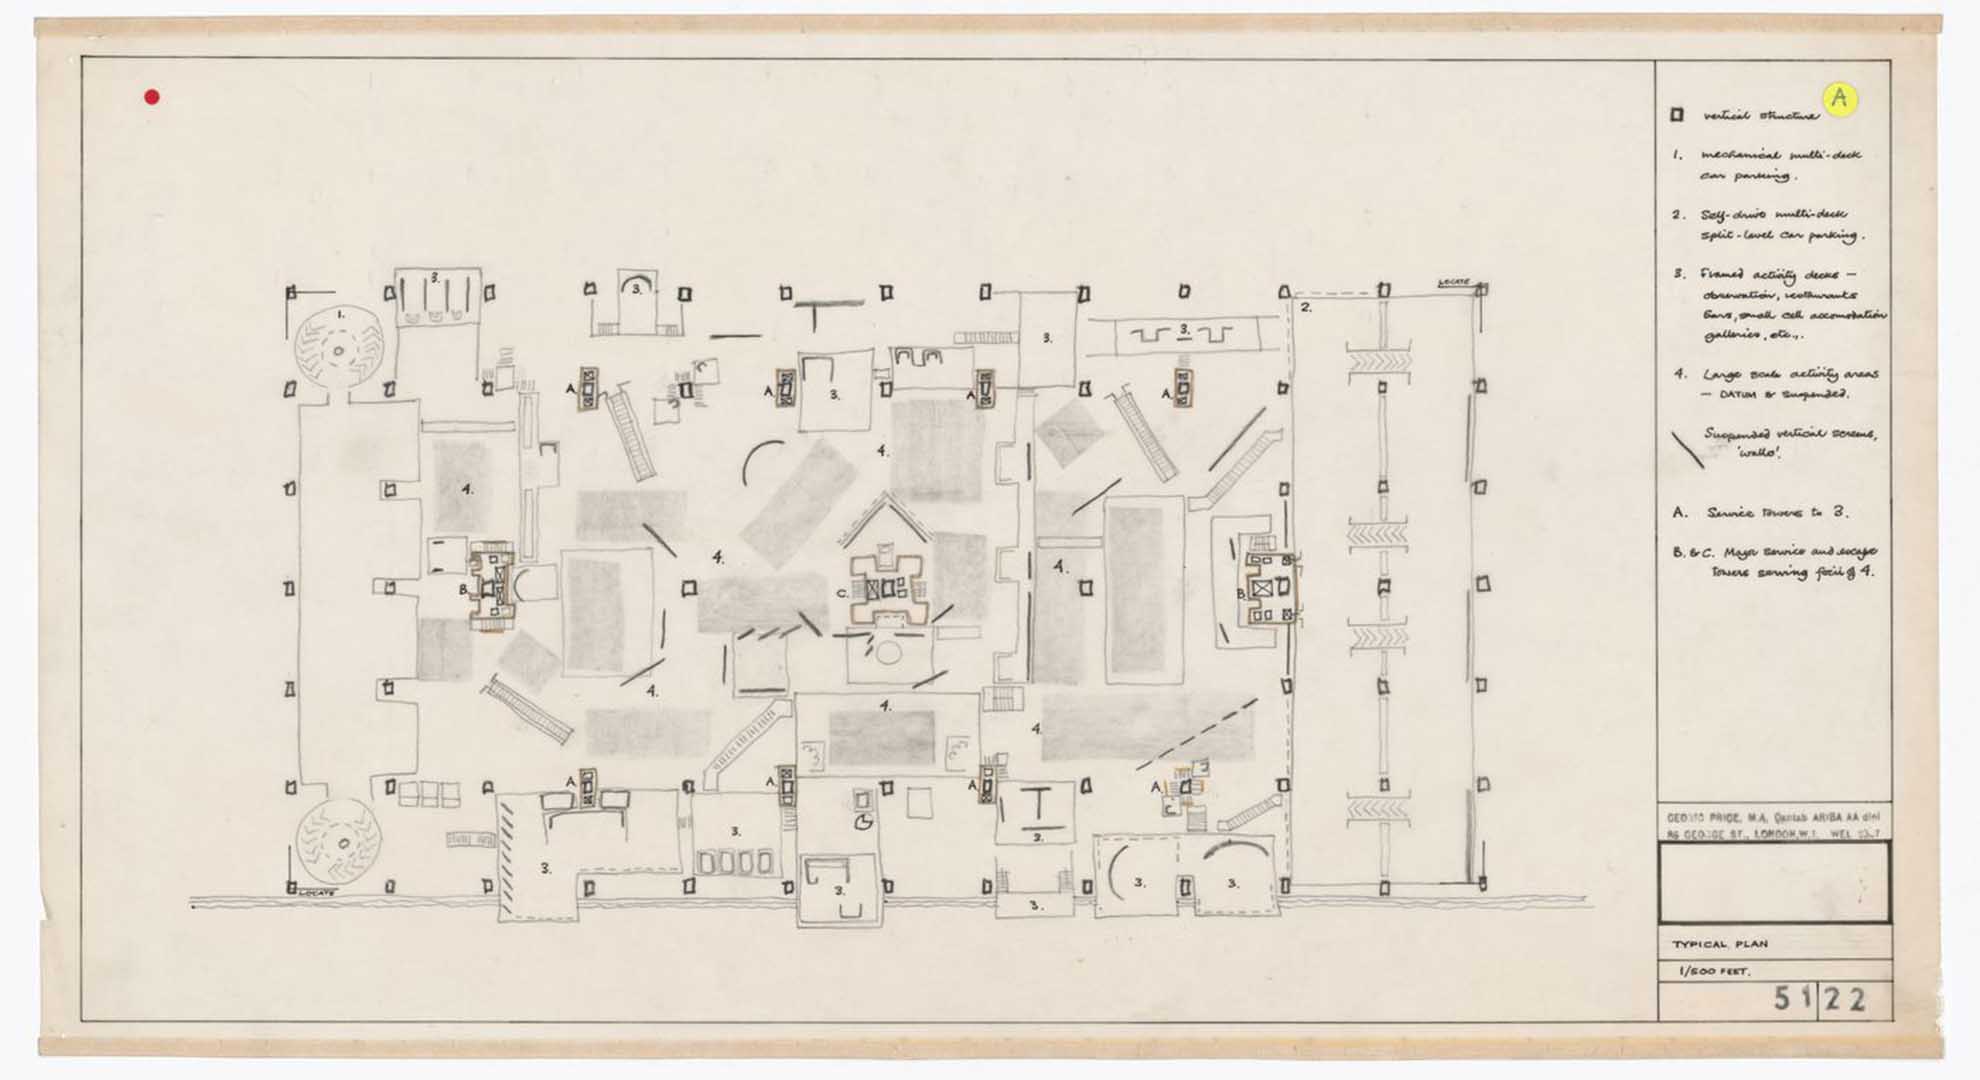 Diagrama del plan del Fun Palace de 1963 por Cedric Price, que inspiró la integración de inteligencia artificial en arquitectura.